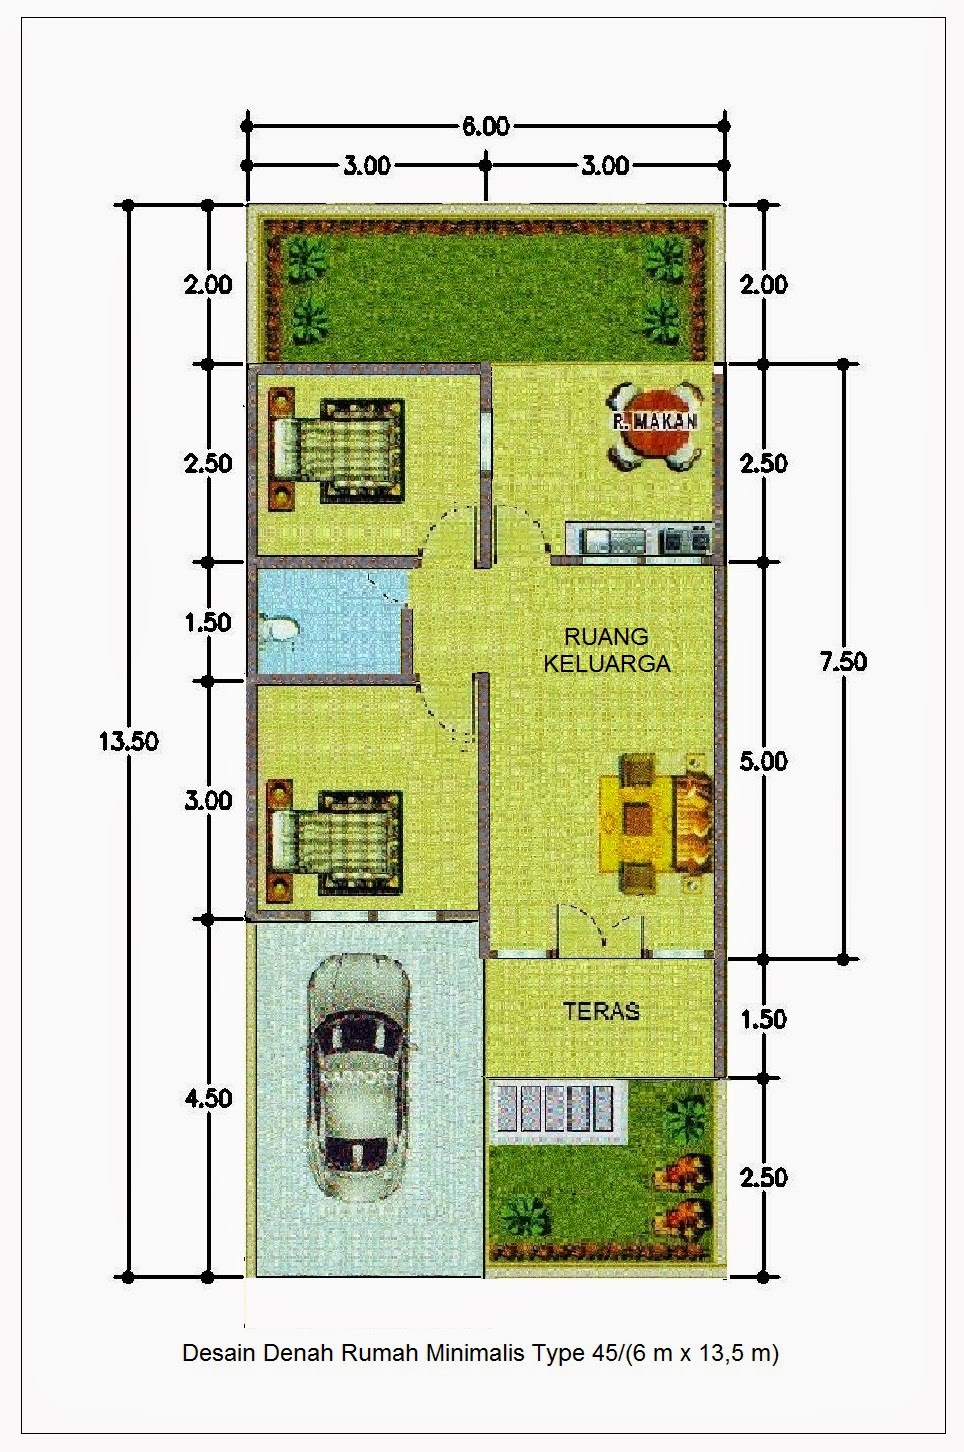  Denah Rumah Minimalis Type 45  1 Lantai Terbaru 2021 